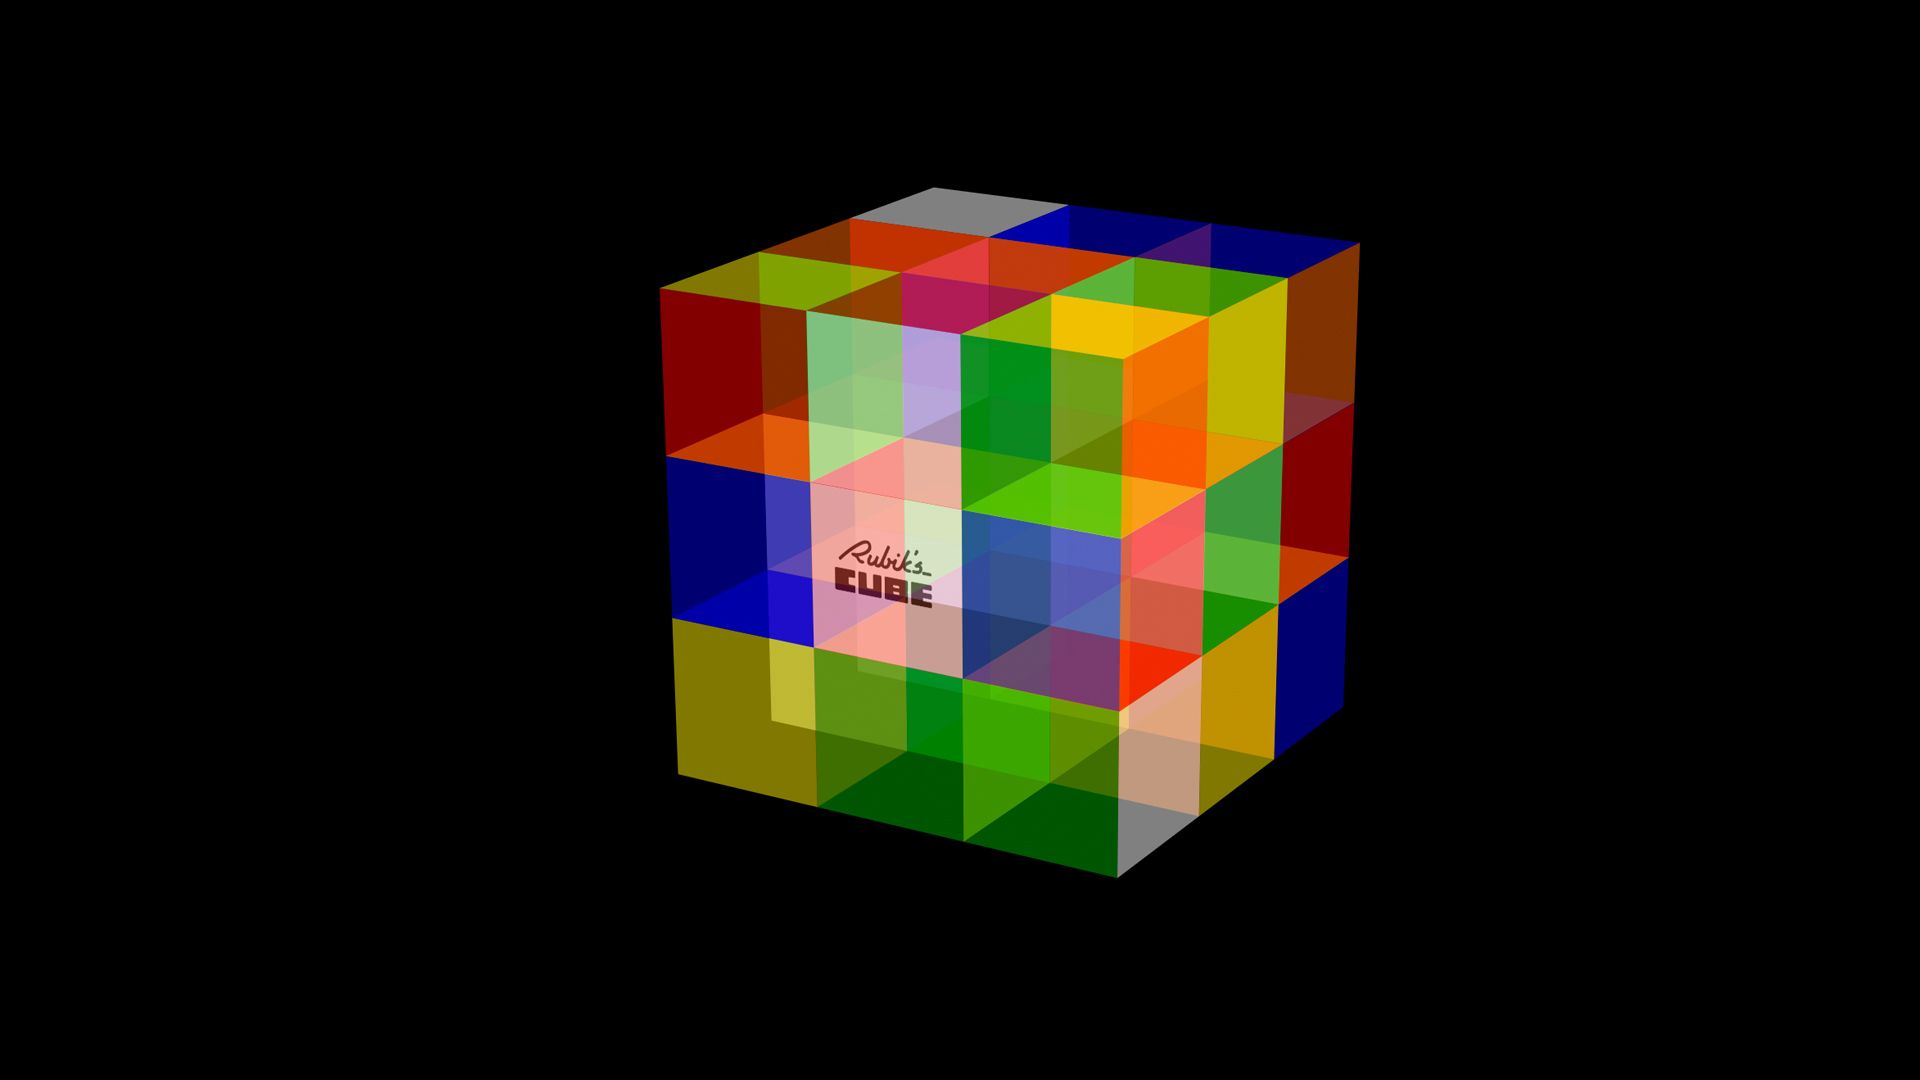 d Rubiks Cube Wallpapers Cube desktop wallpapers Free HD Desktop.